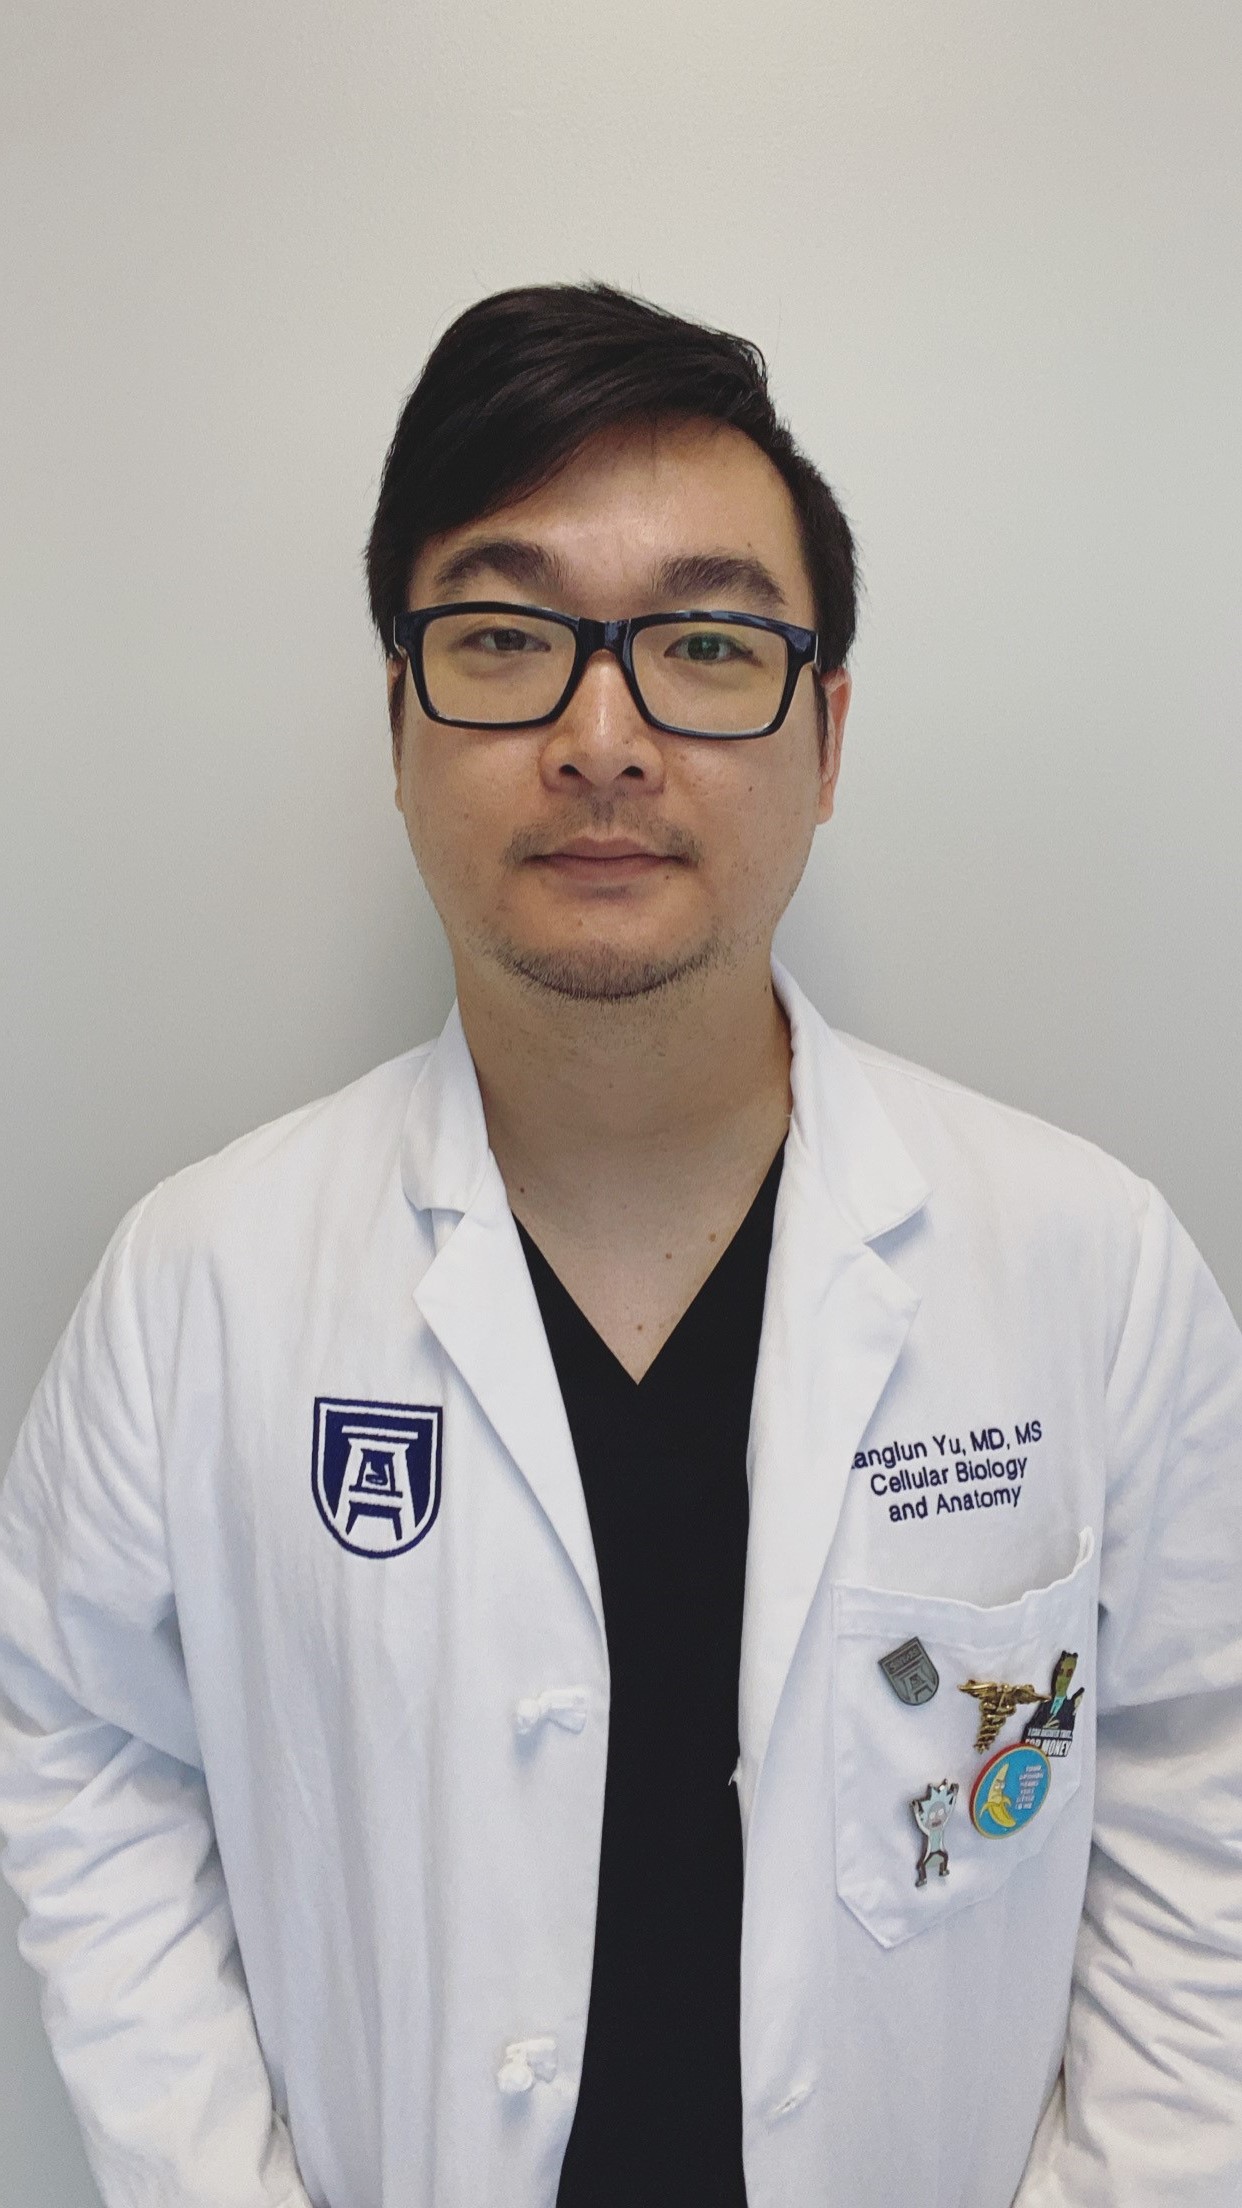 photo of Dr. Kanglun Yu